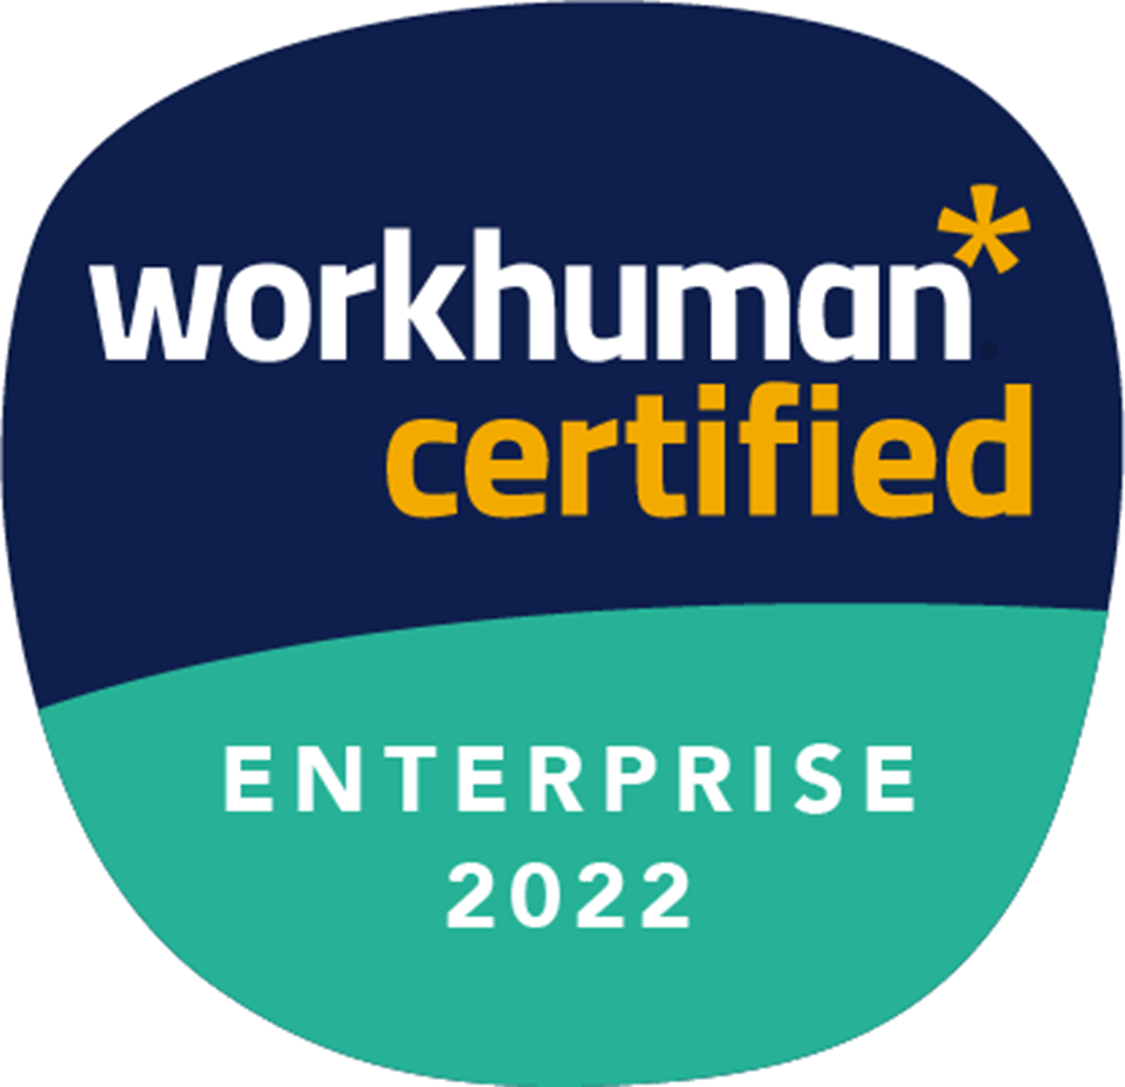 workhuman certified - Enterprise 2022 logo